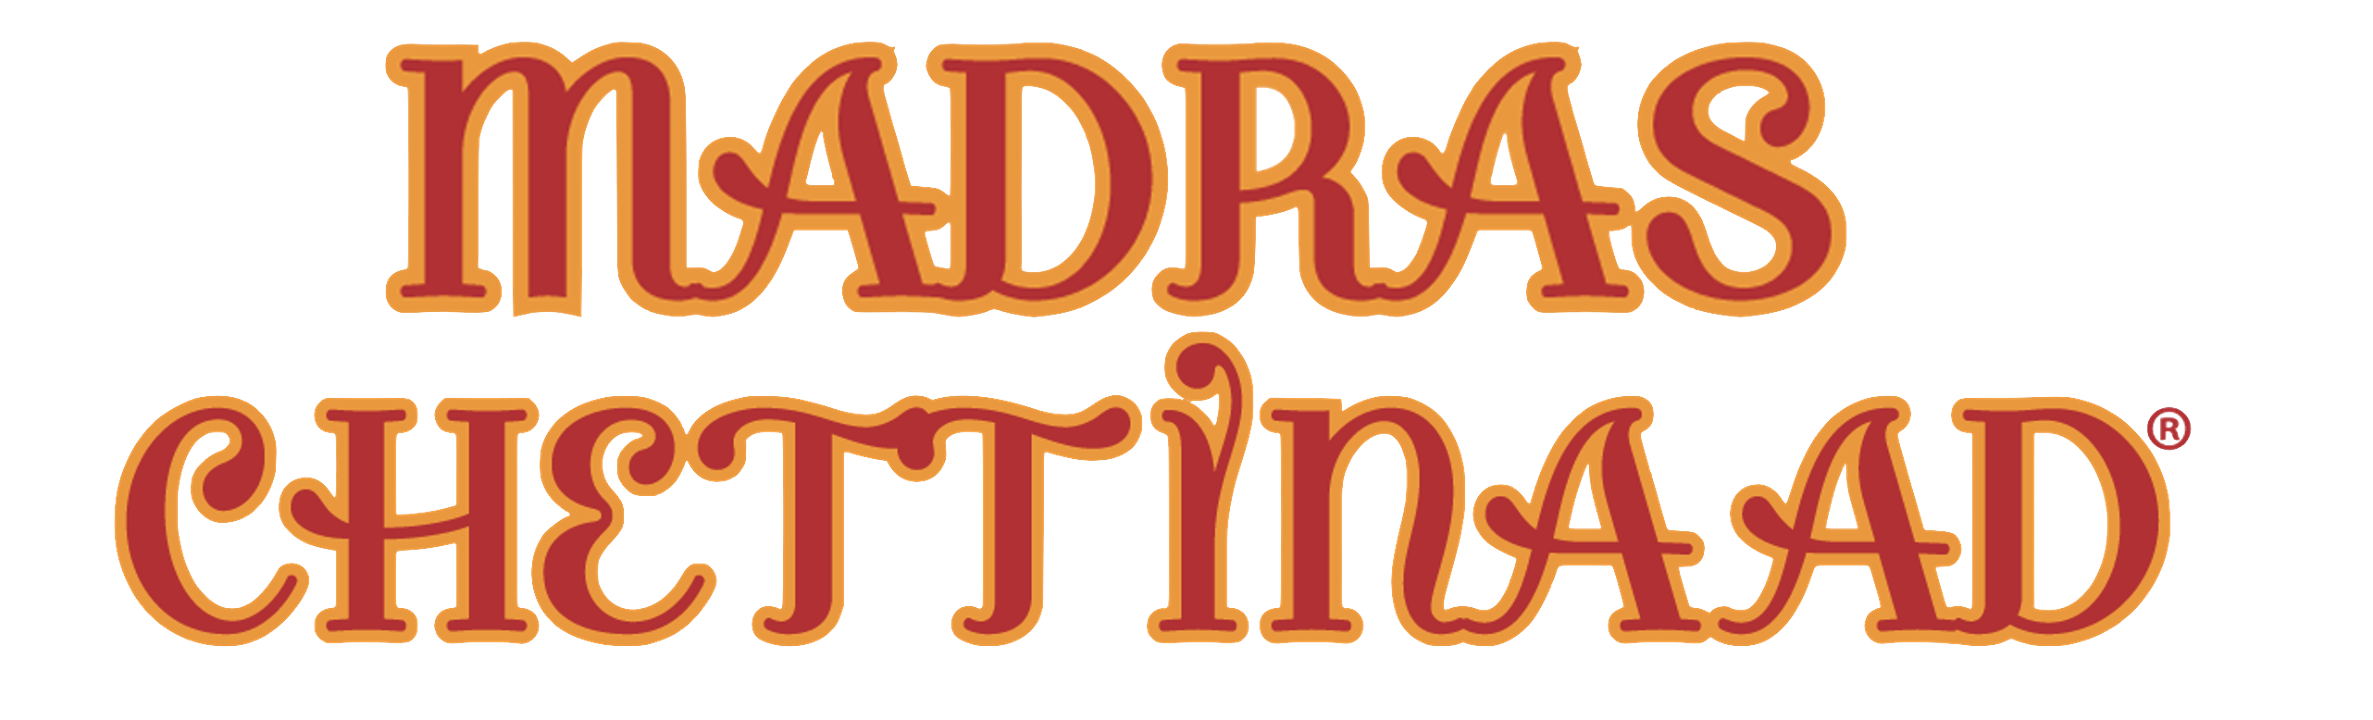 Madras Chettinaad logo